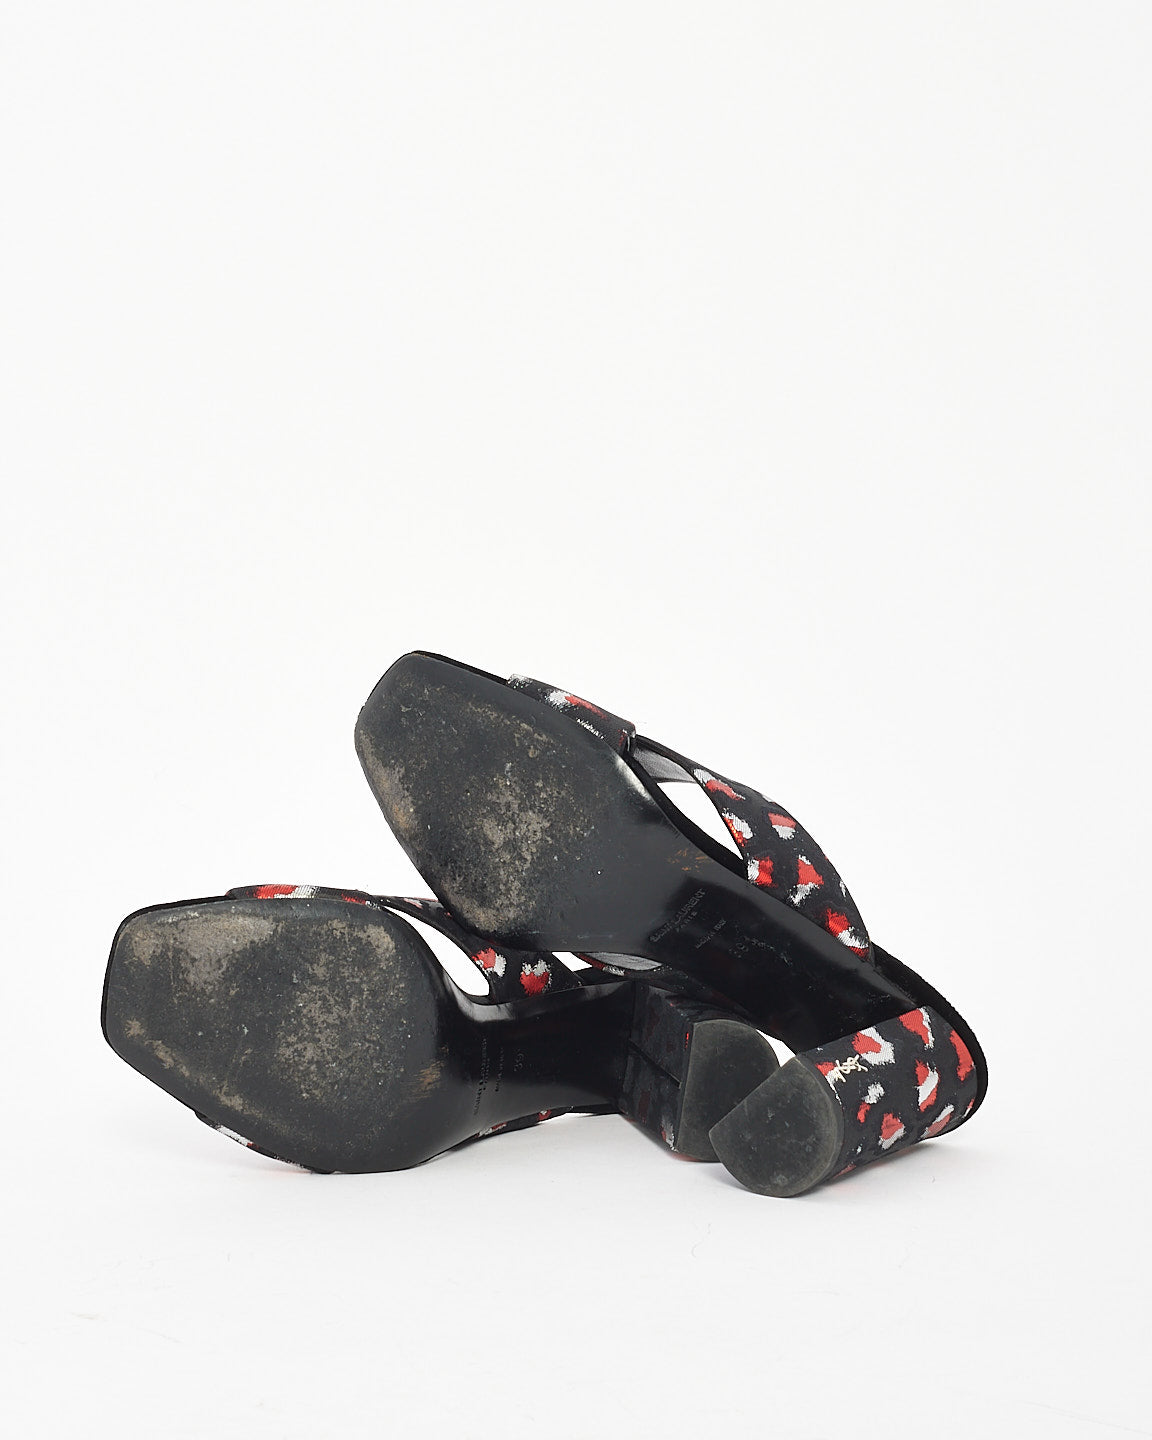 Saint Laurent Black/Red Satin Print Mule Heels - 39